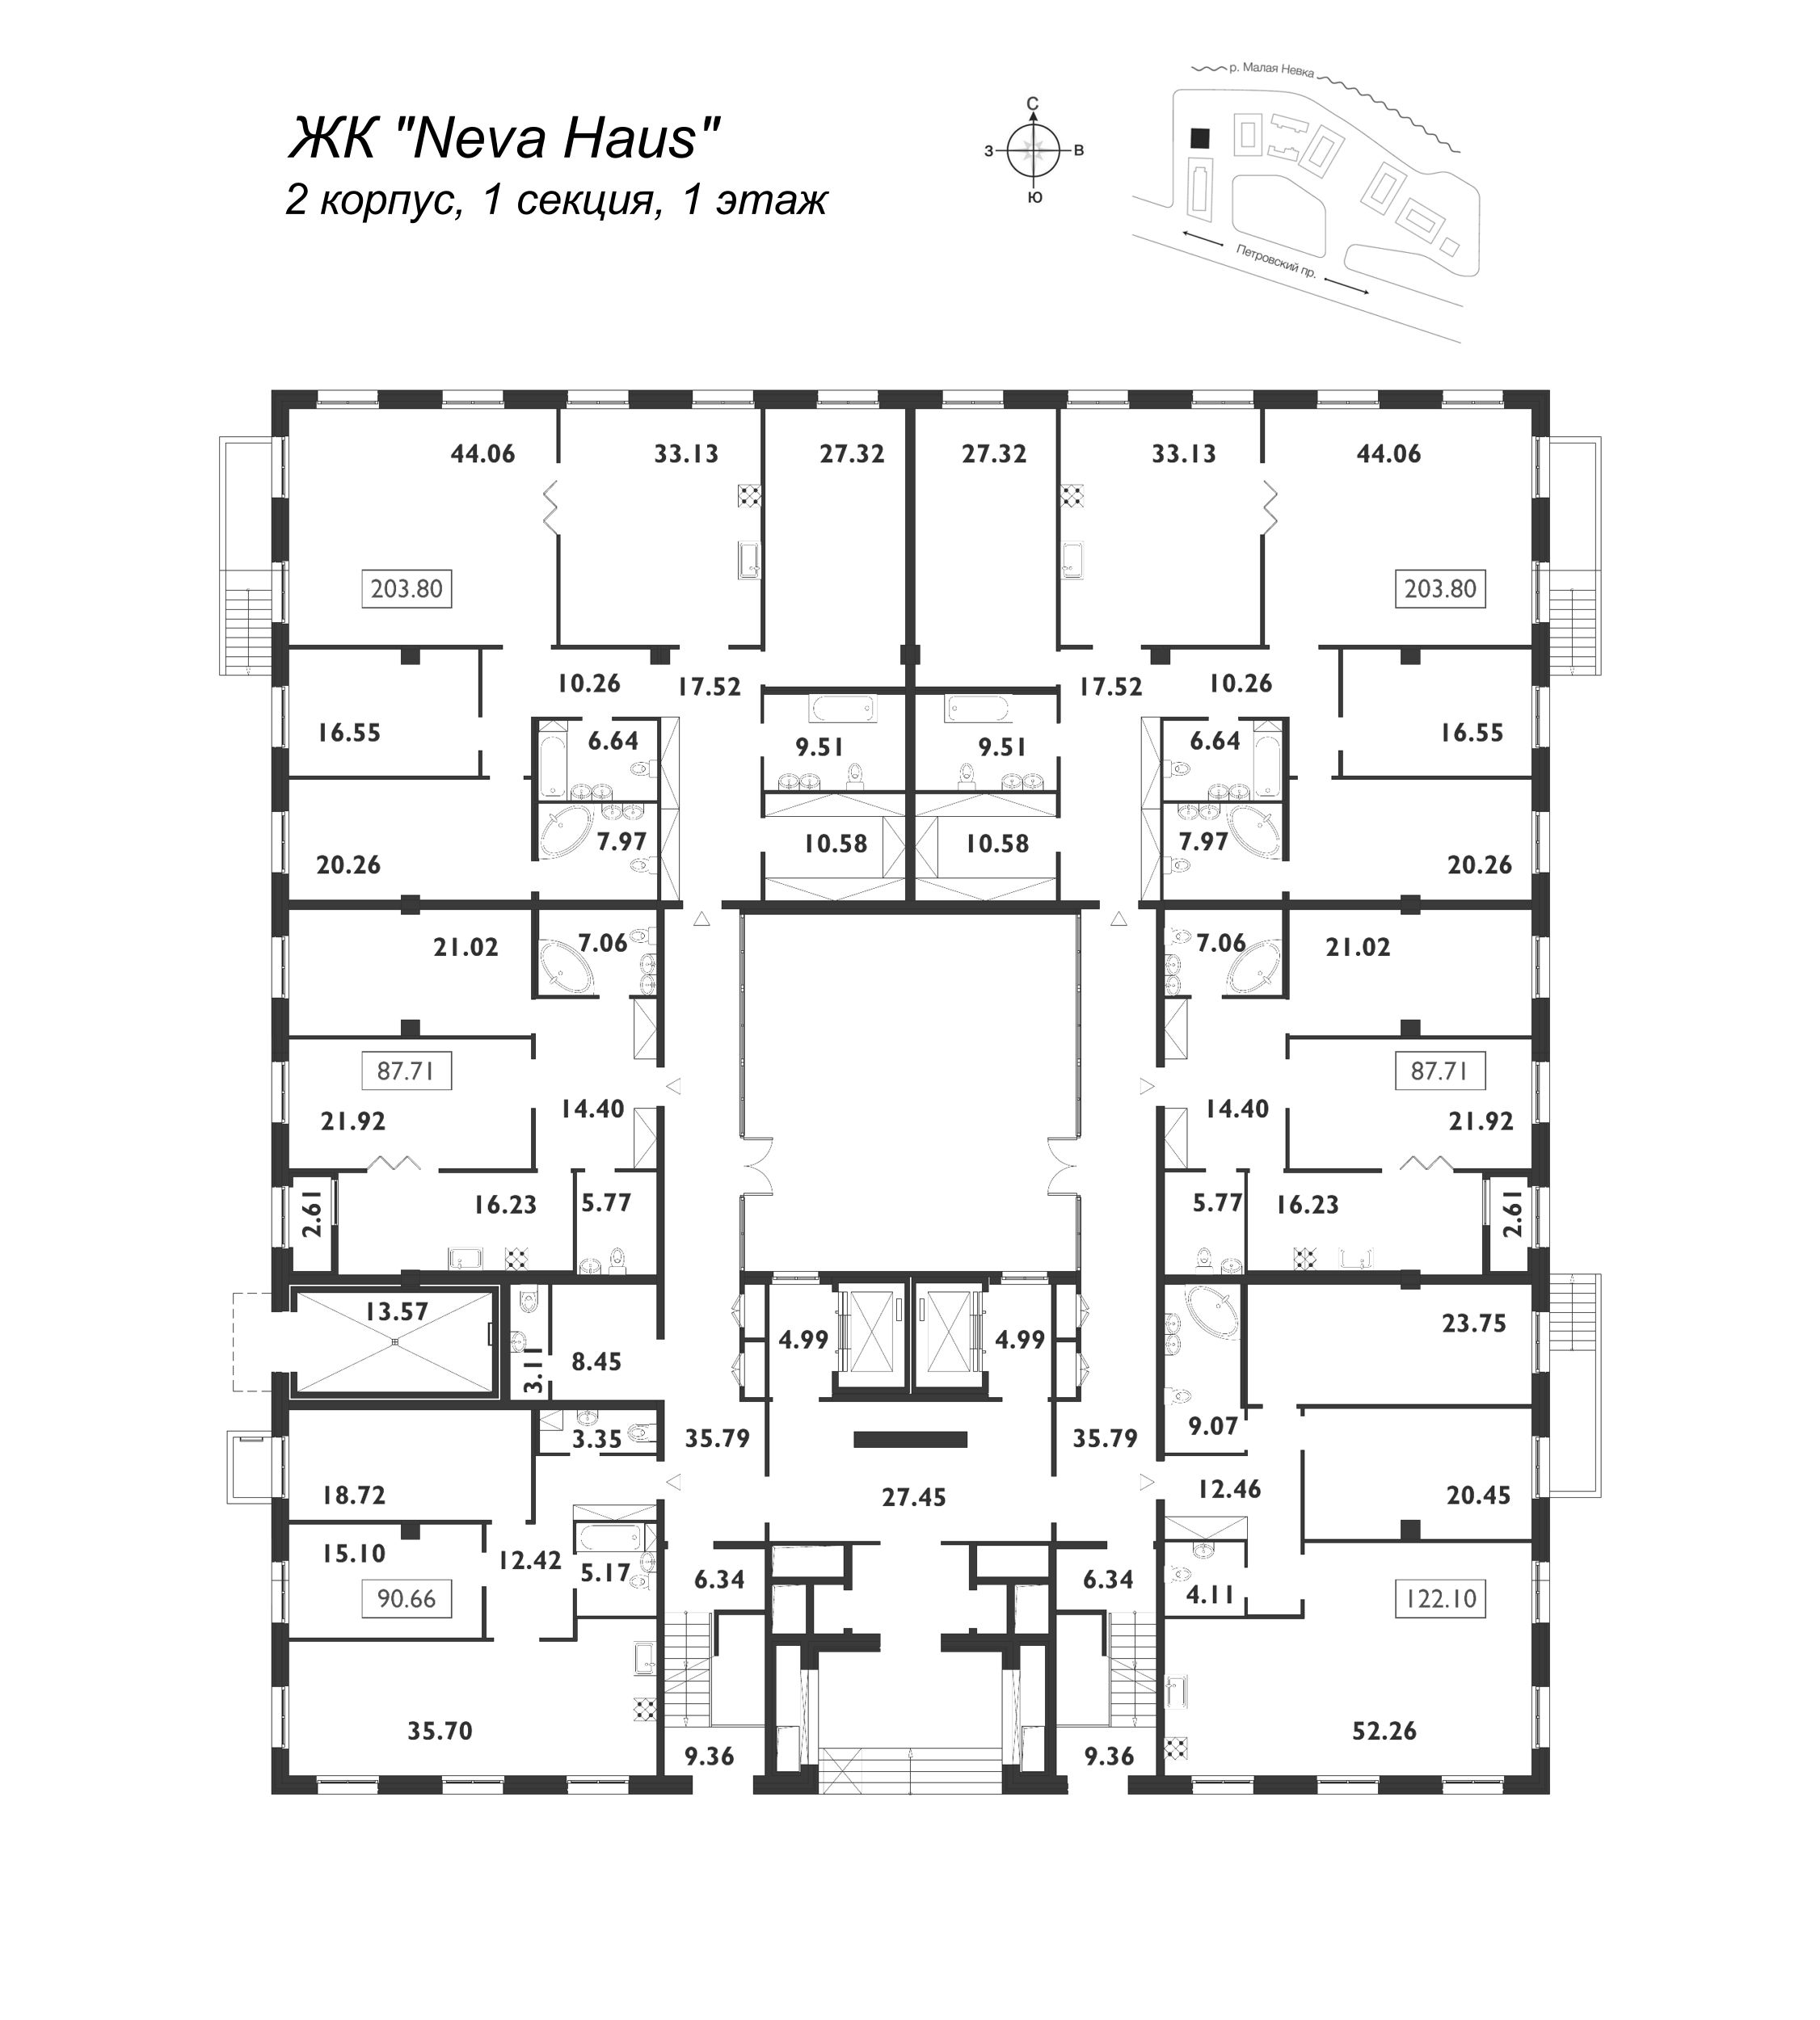 5-комнатная (Евро) квартира, 204 м² в ЖК "Neva Haus" - планировка этажа